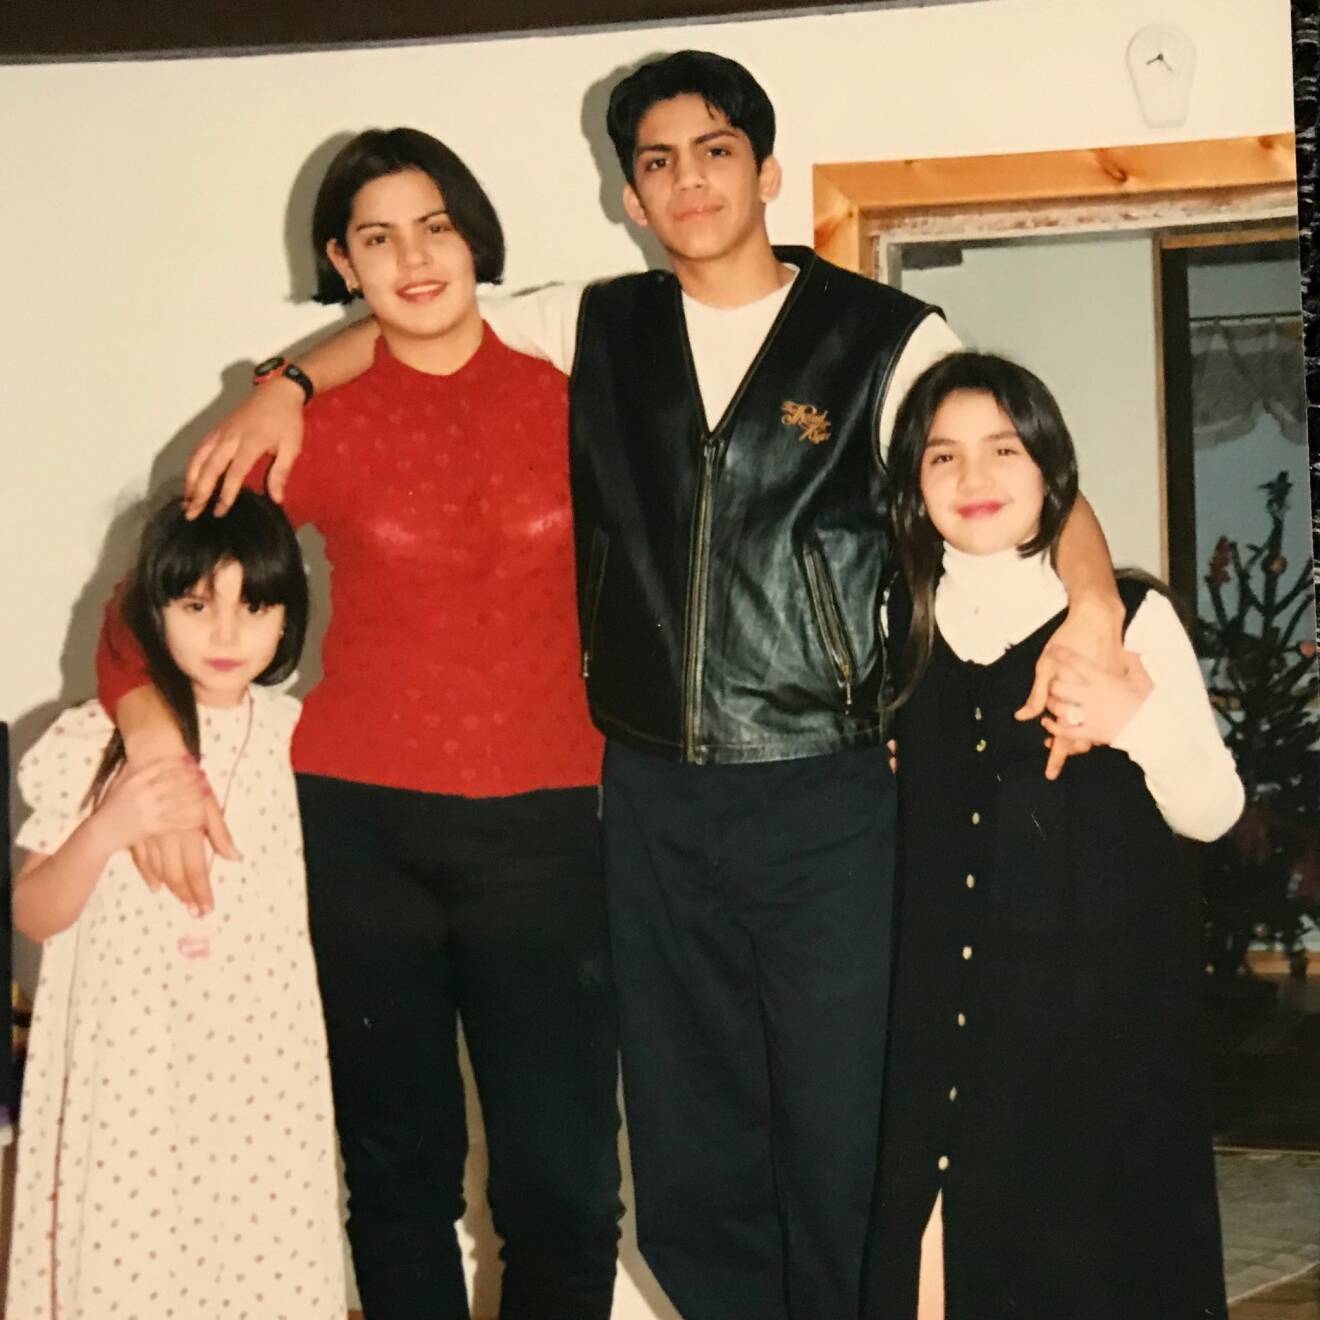 Josselin Freytes Peña med sina syskon Juan, Joanna och Jennifer.